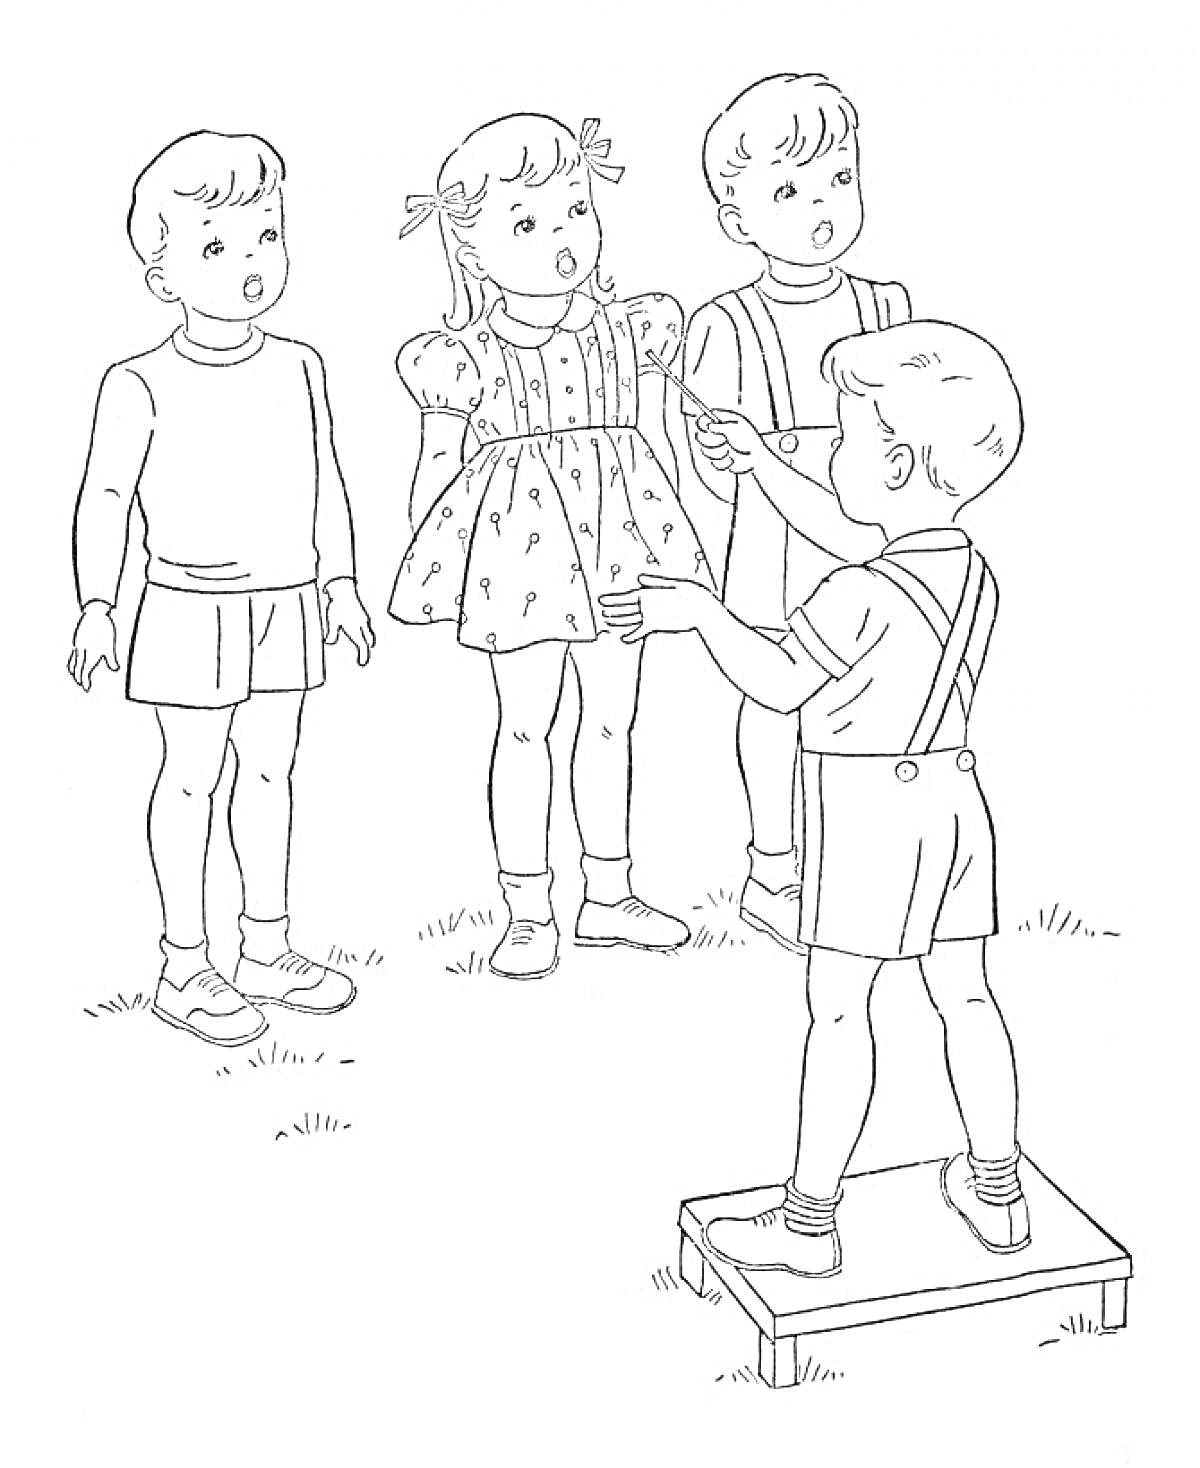 Дети играют в подвижные игры на свежем воздухе, один ребёнок стоит на скамейке и показывает остальным, что делать